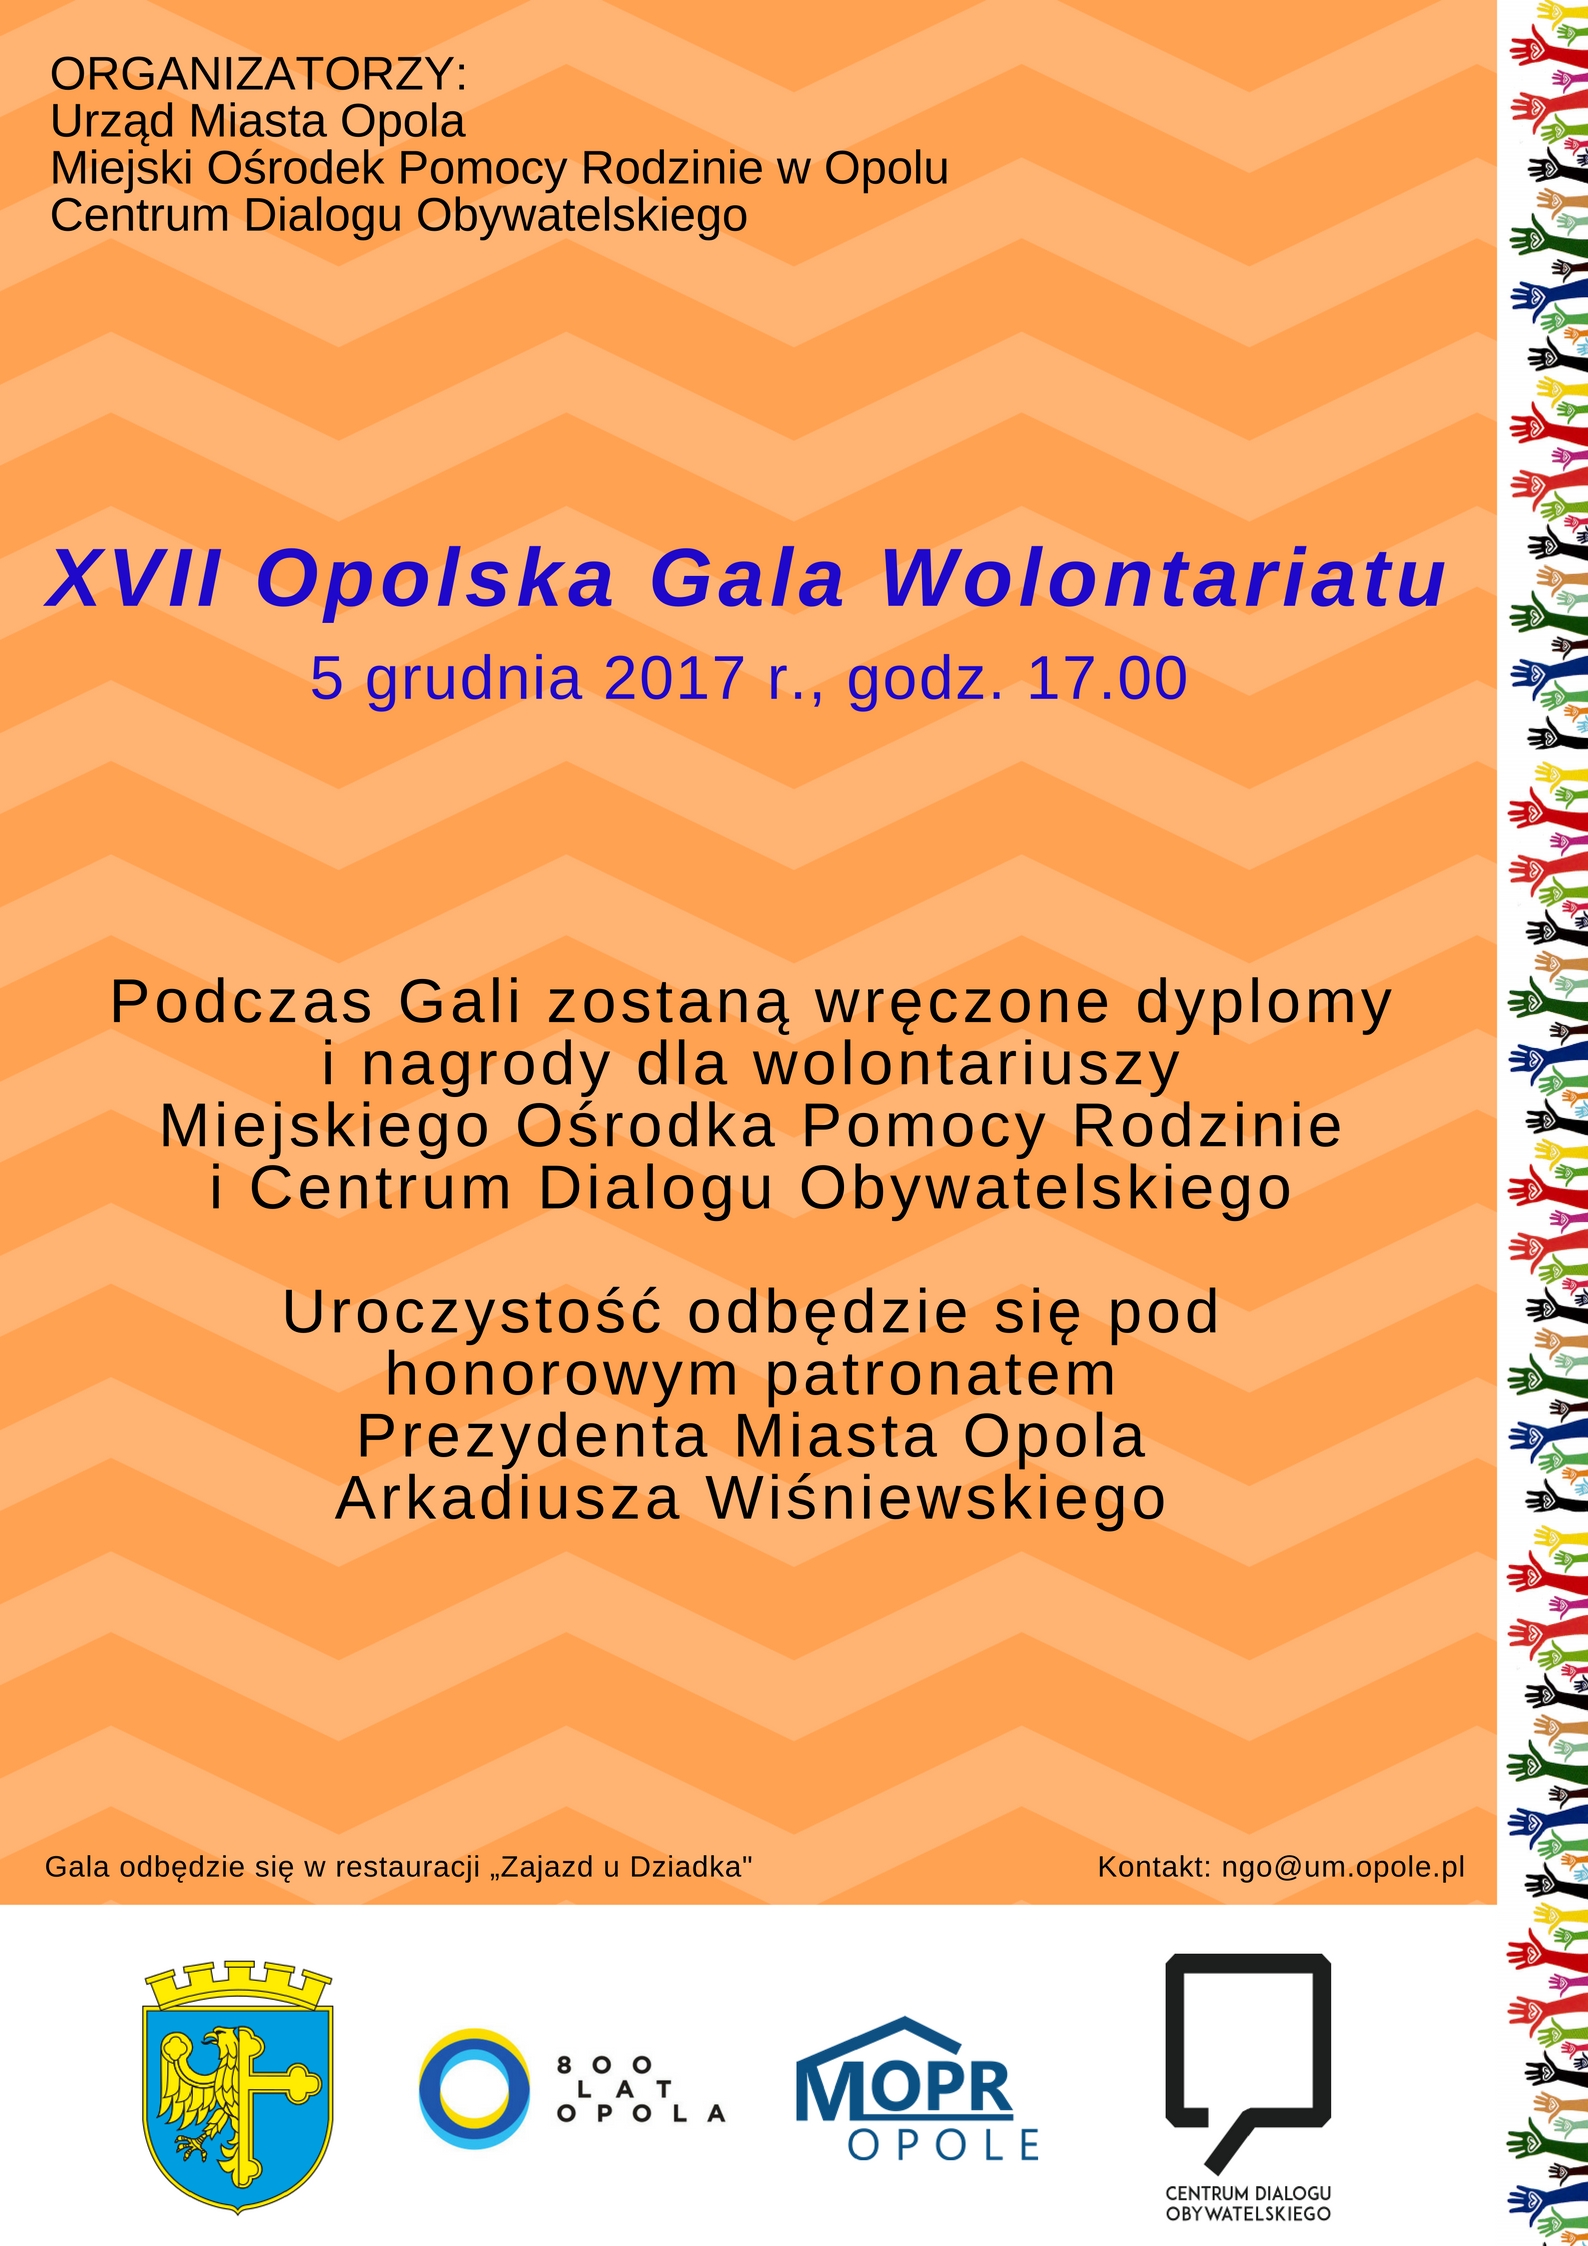 XVII Opolska Gala Wolontariatu już dziś